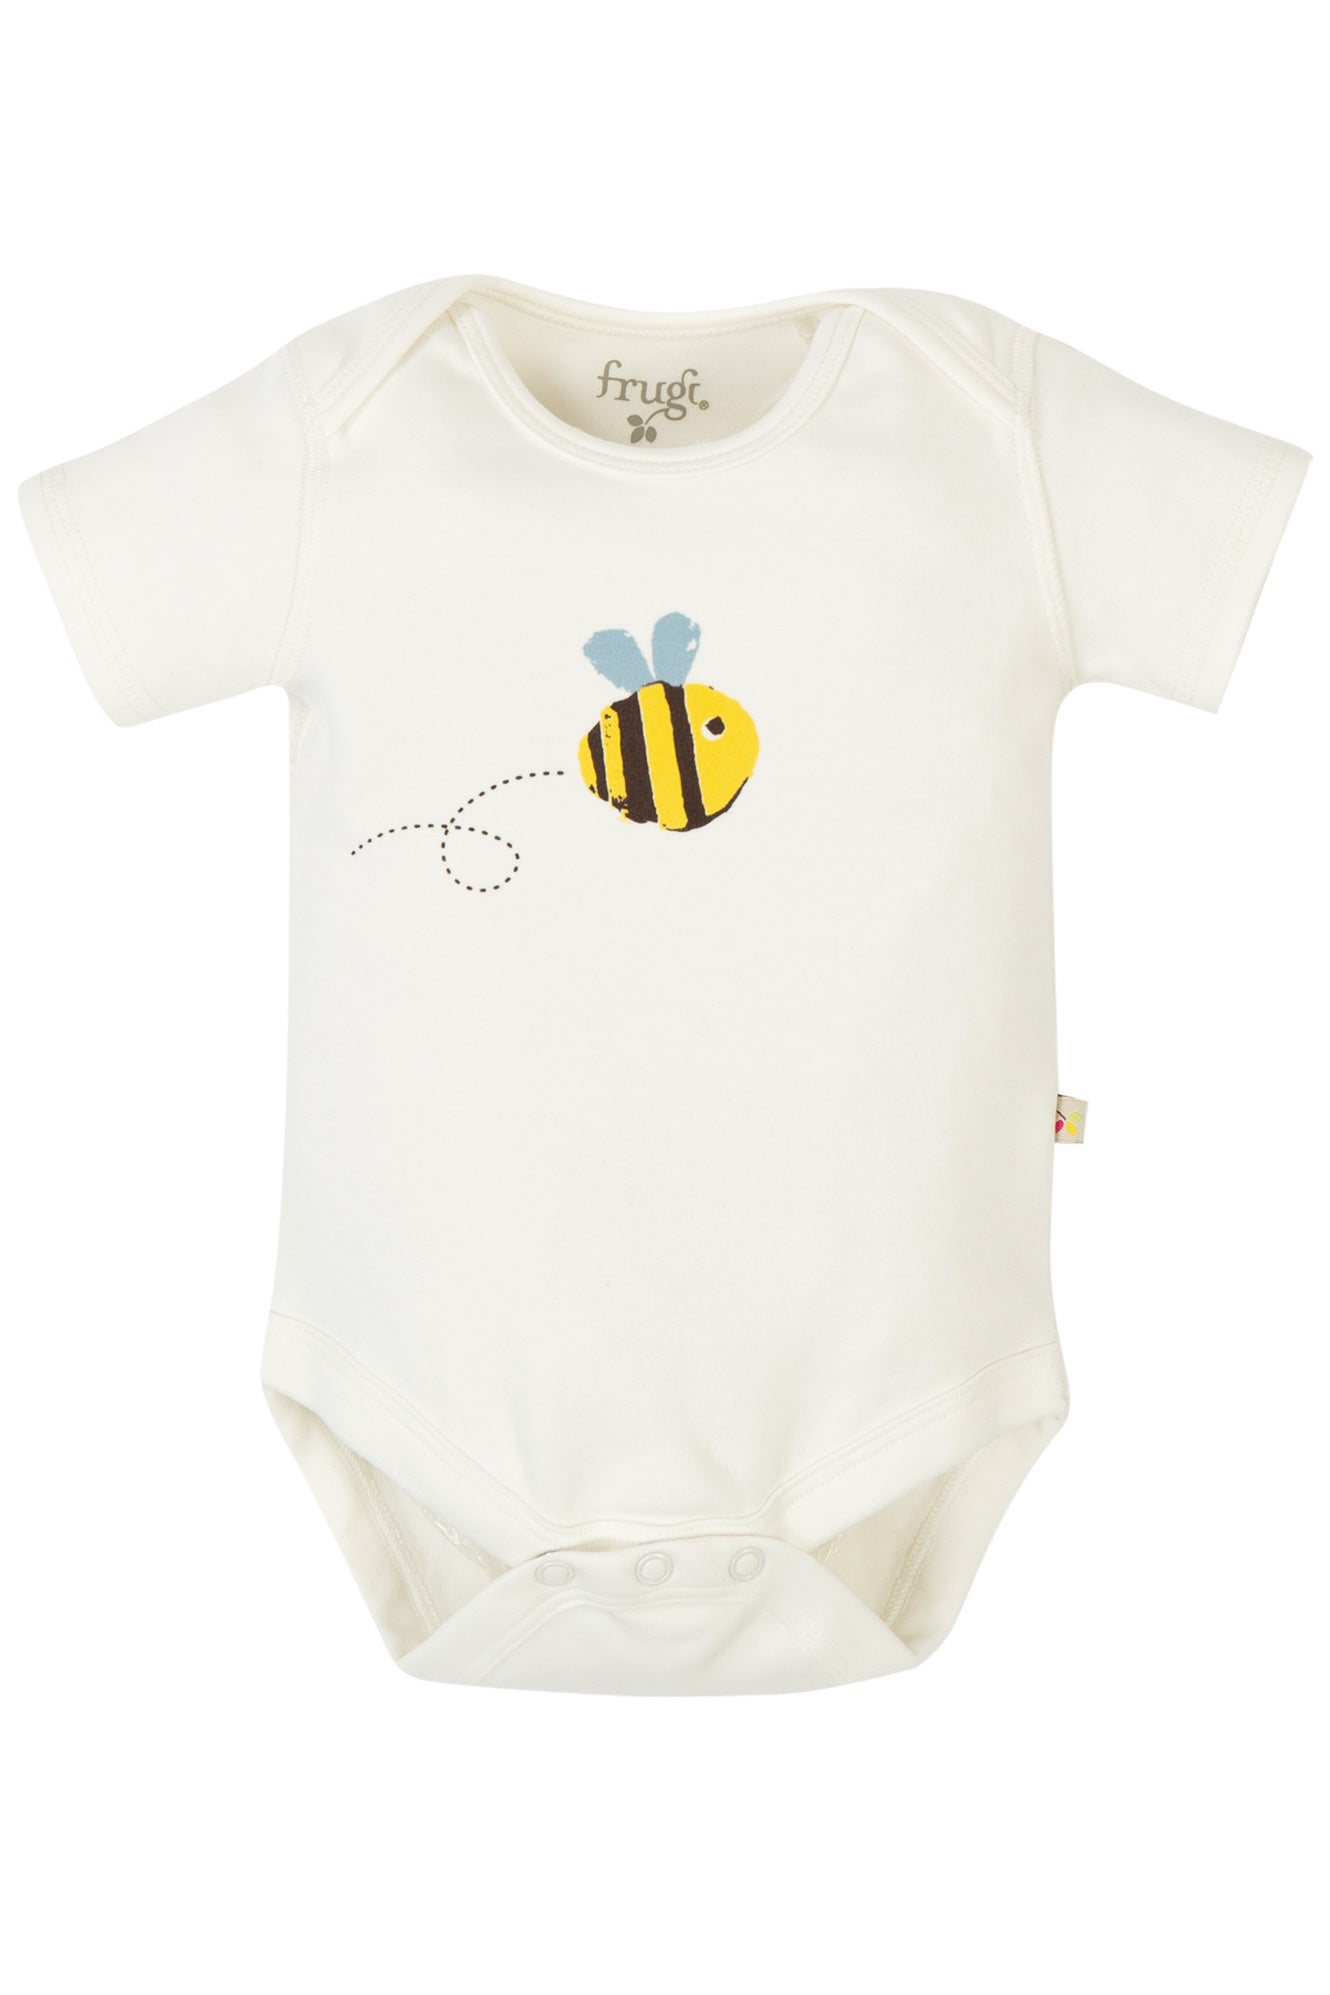 Frugi Buzzy Bee Baby Gift Set